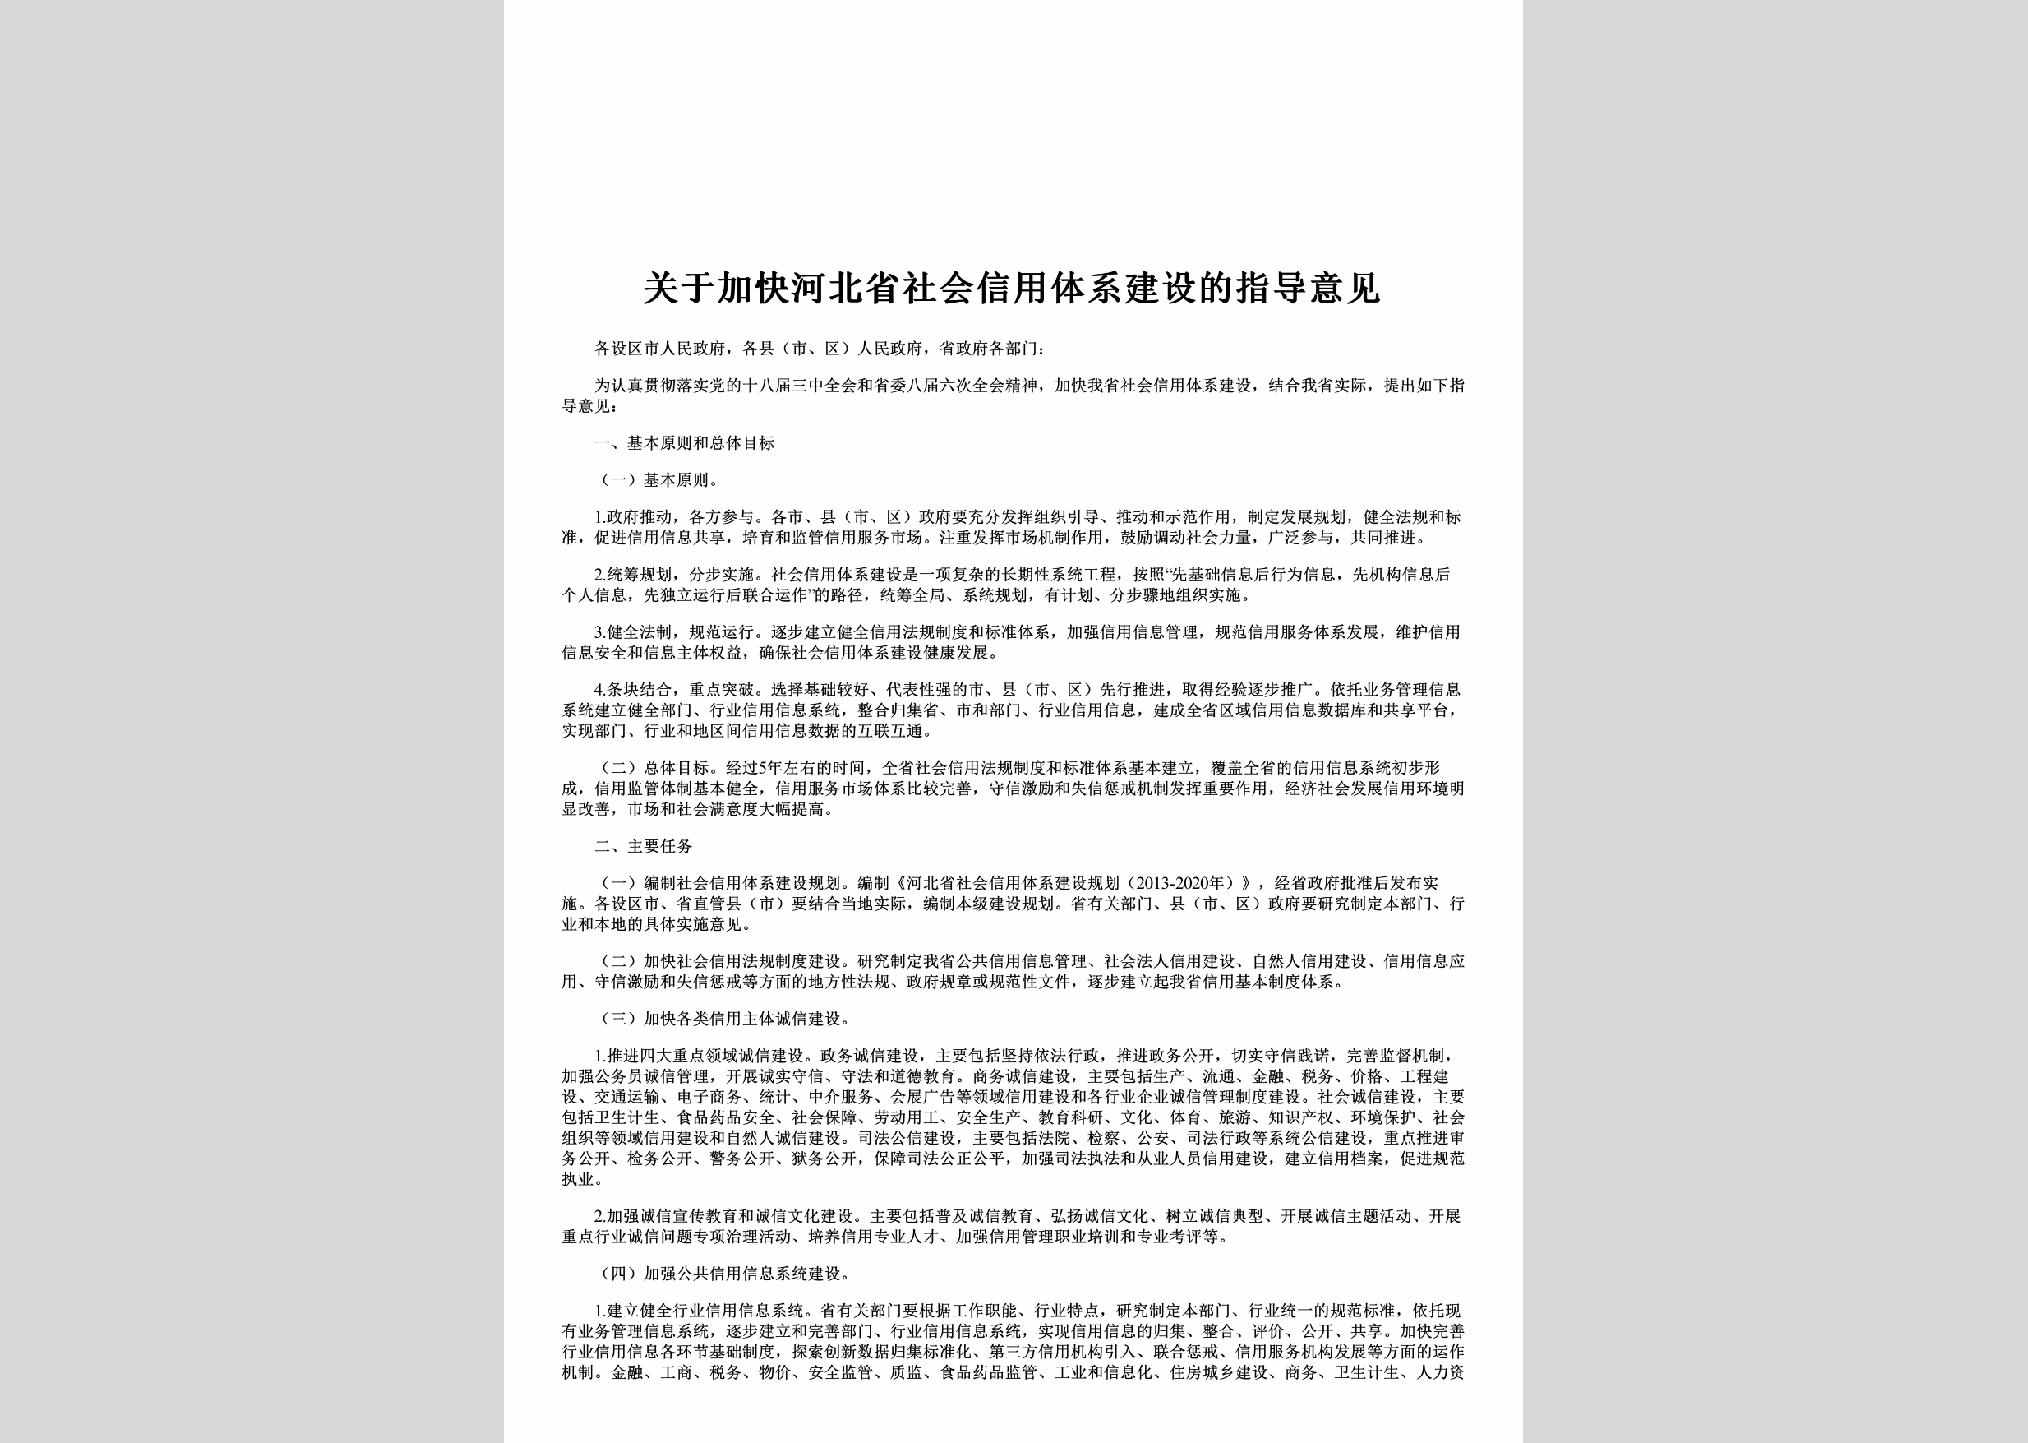 HB-SHXYZDYJ-2013：关于加快河北省社会信用体系建设的指导意见